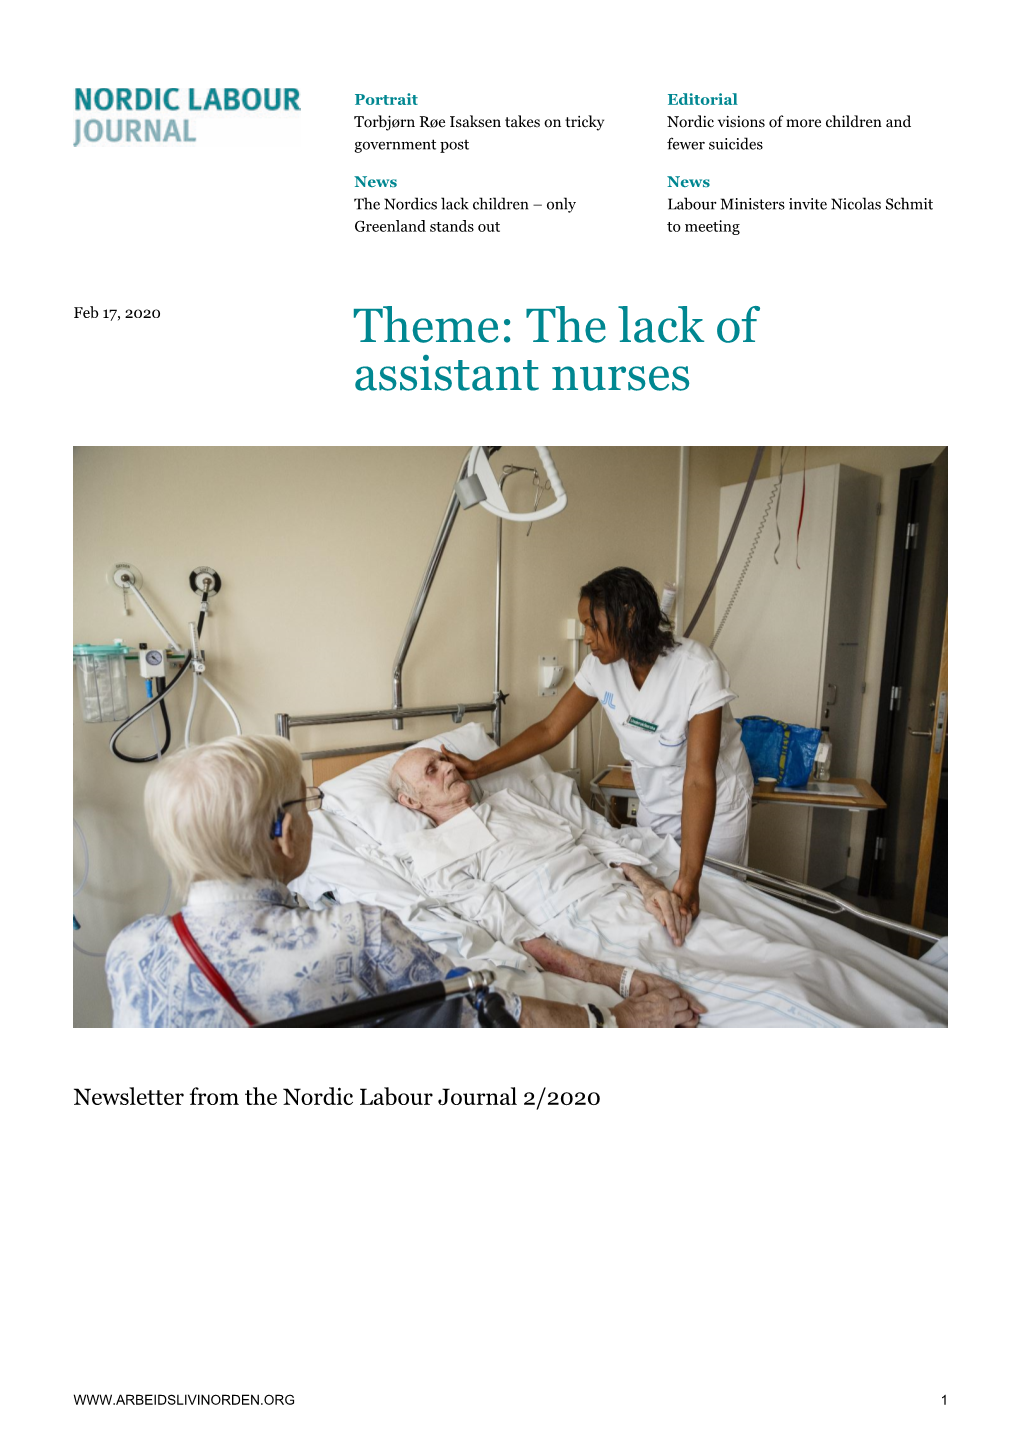 The Lack of Assistant Nurses